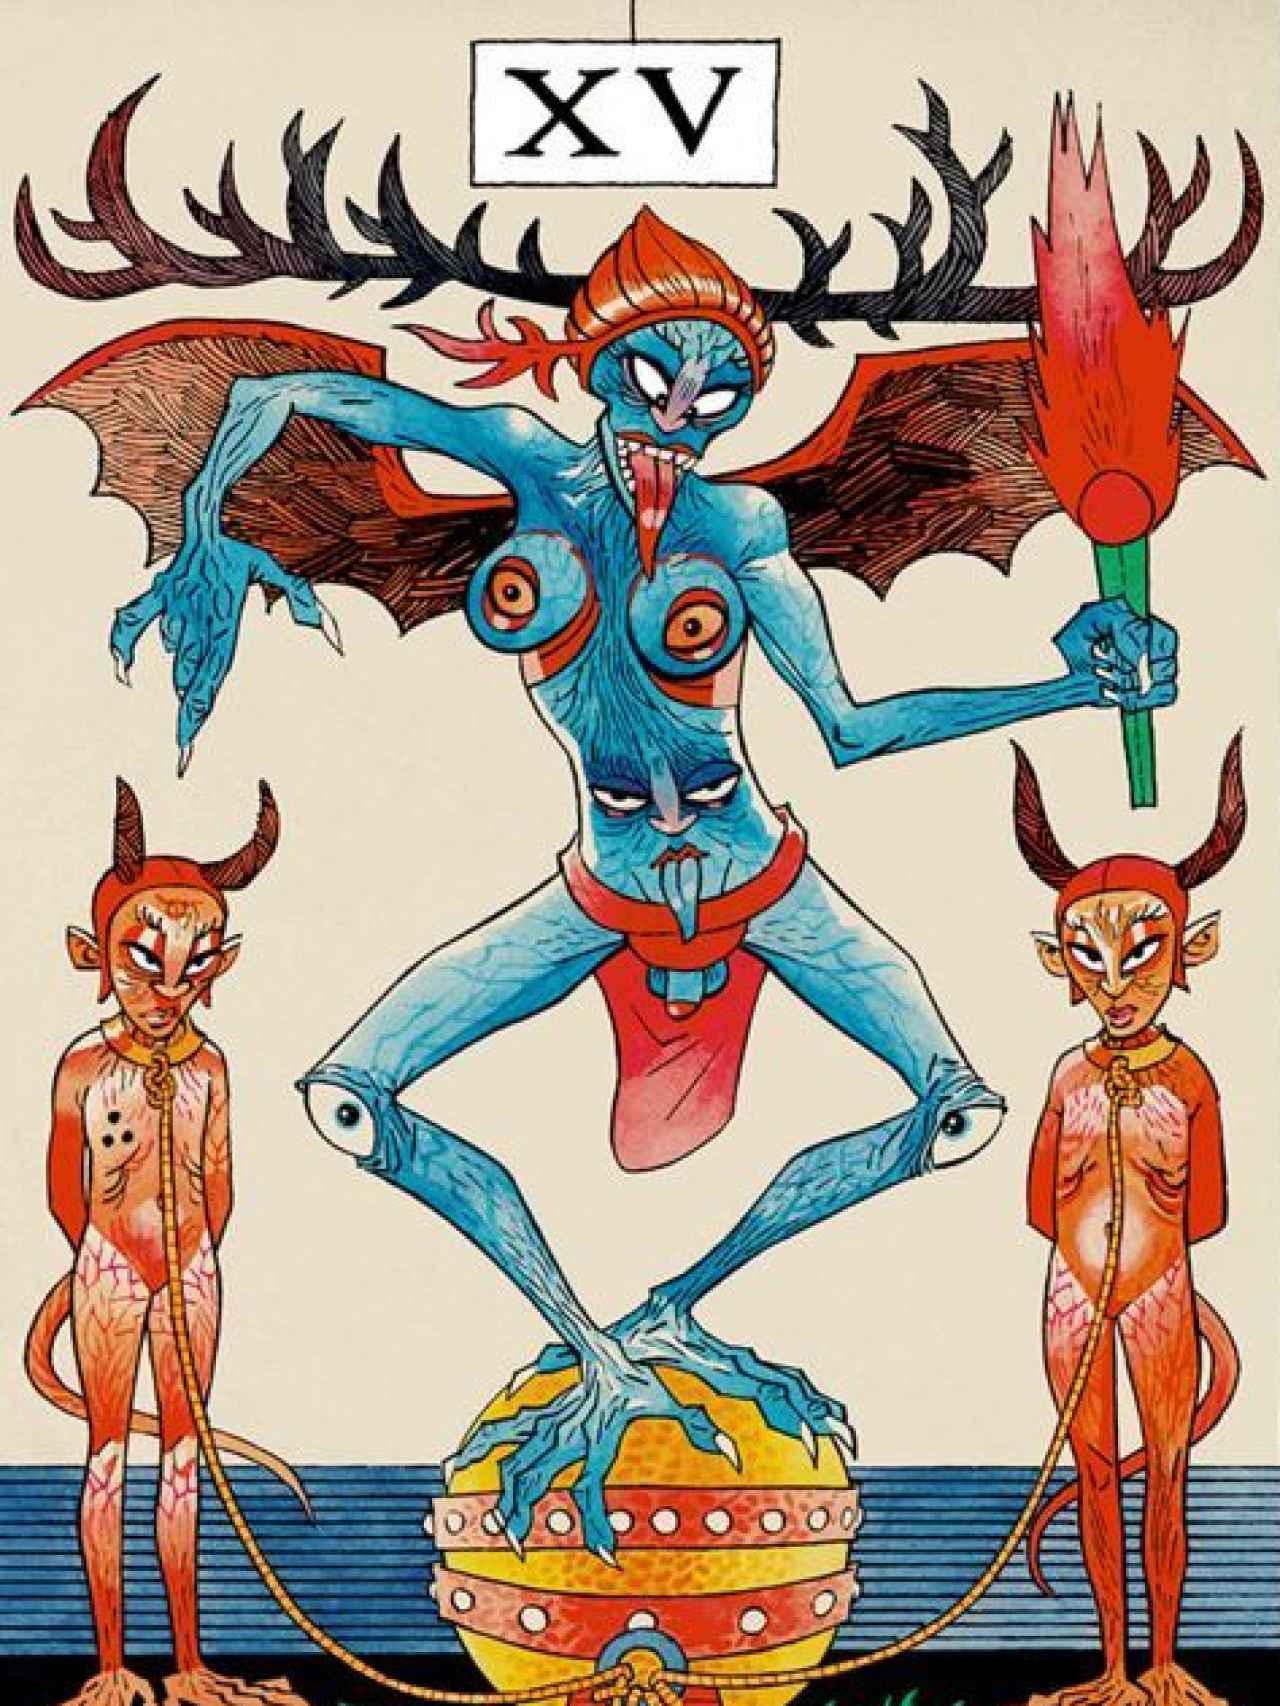 El Diablo, una de las cartas de tarot de Hewlett.